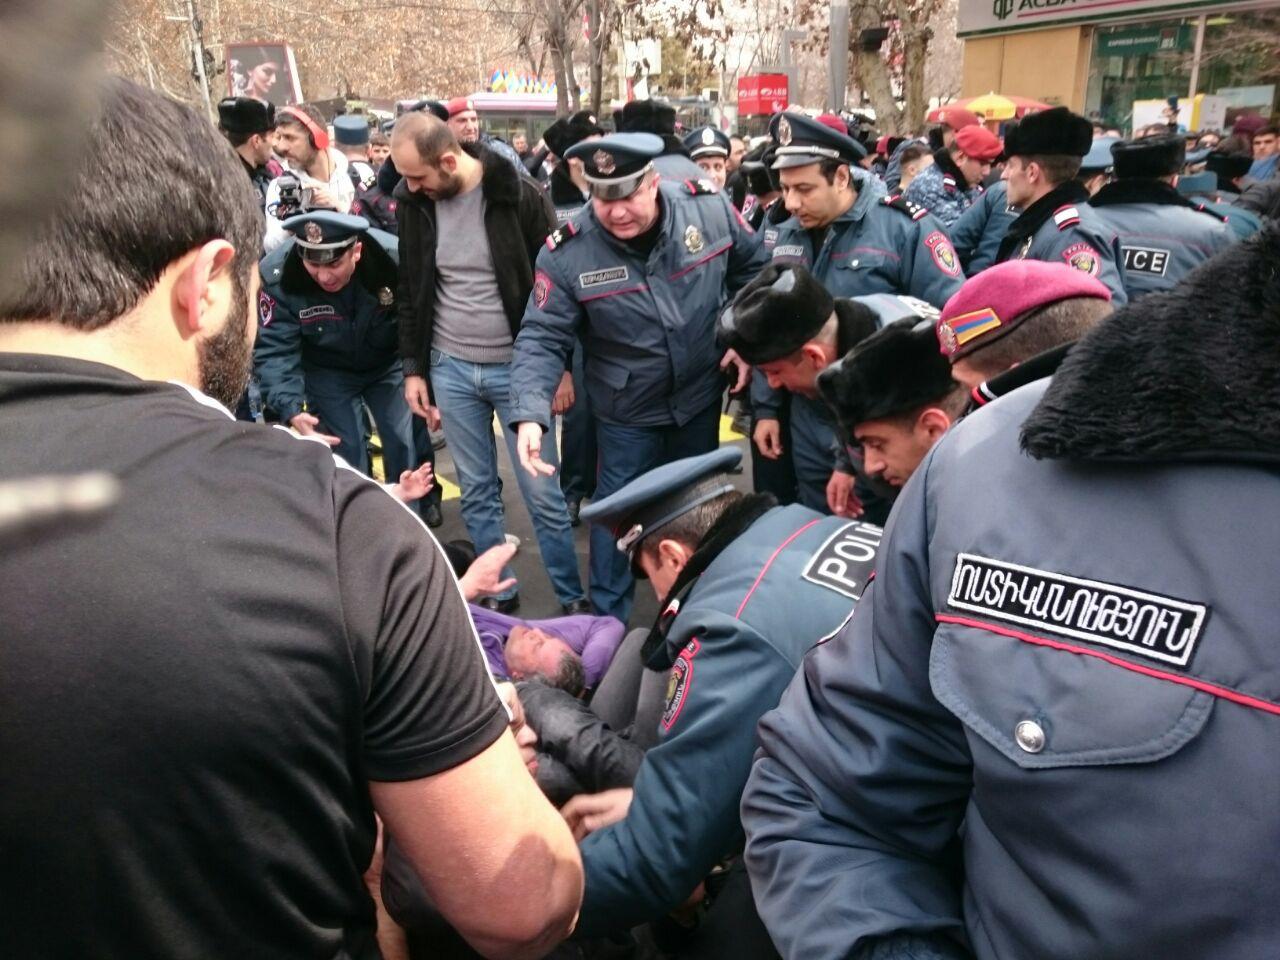 Օպերայի տարածքում ոստիկանները հարձակվեցին բողոքի ակցիայի մասնակիցների վրա (Լրացվում է)